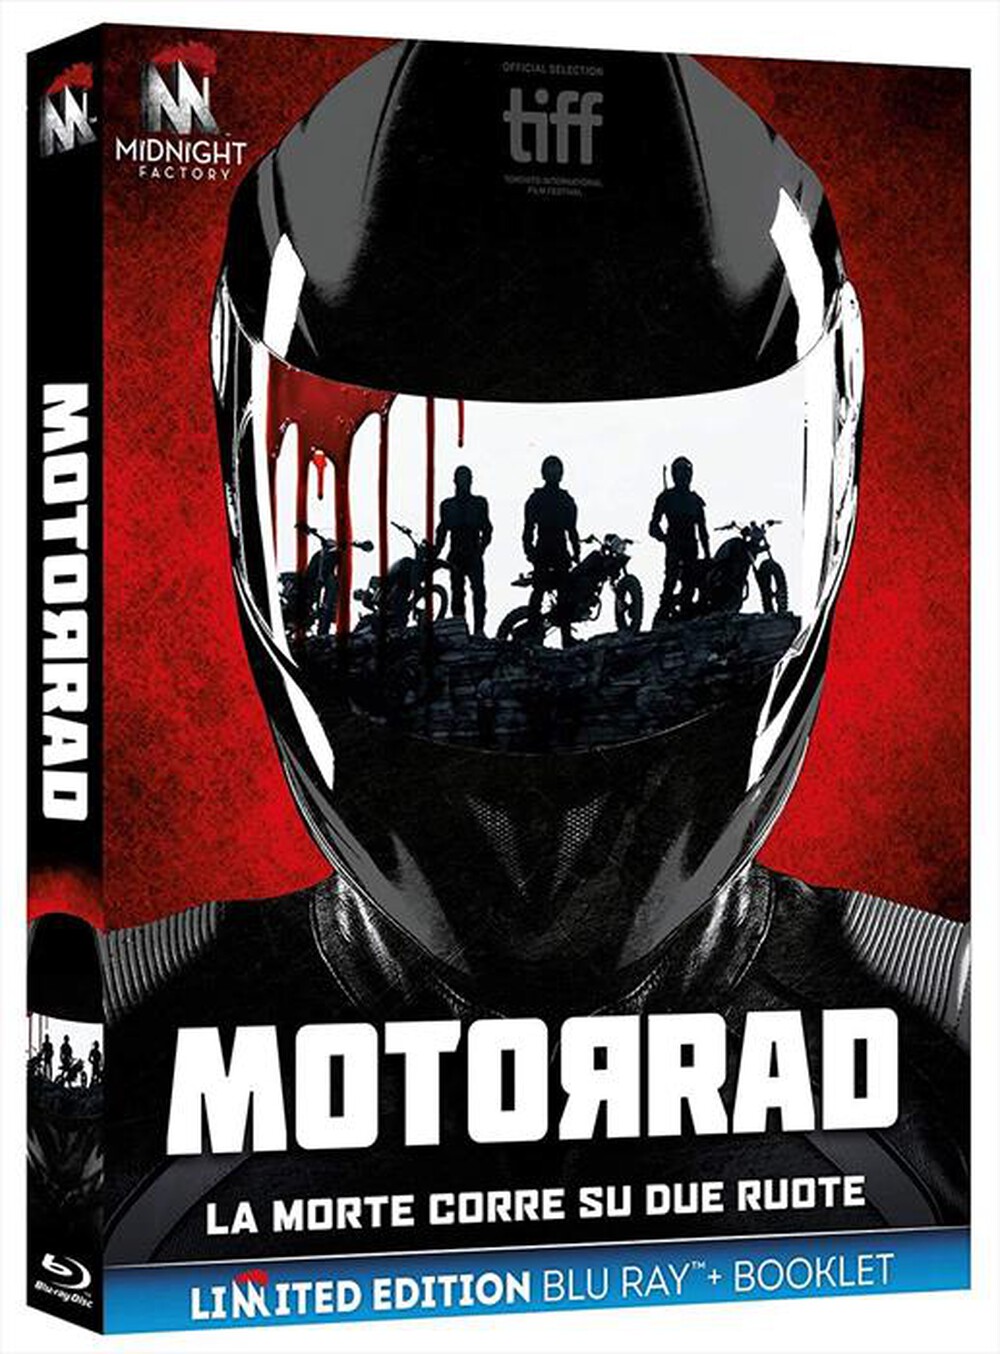 "Midnight Factory - Motorrad (Blu-Ray+Booklet)"